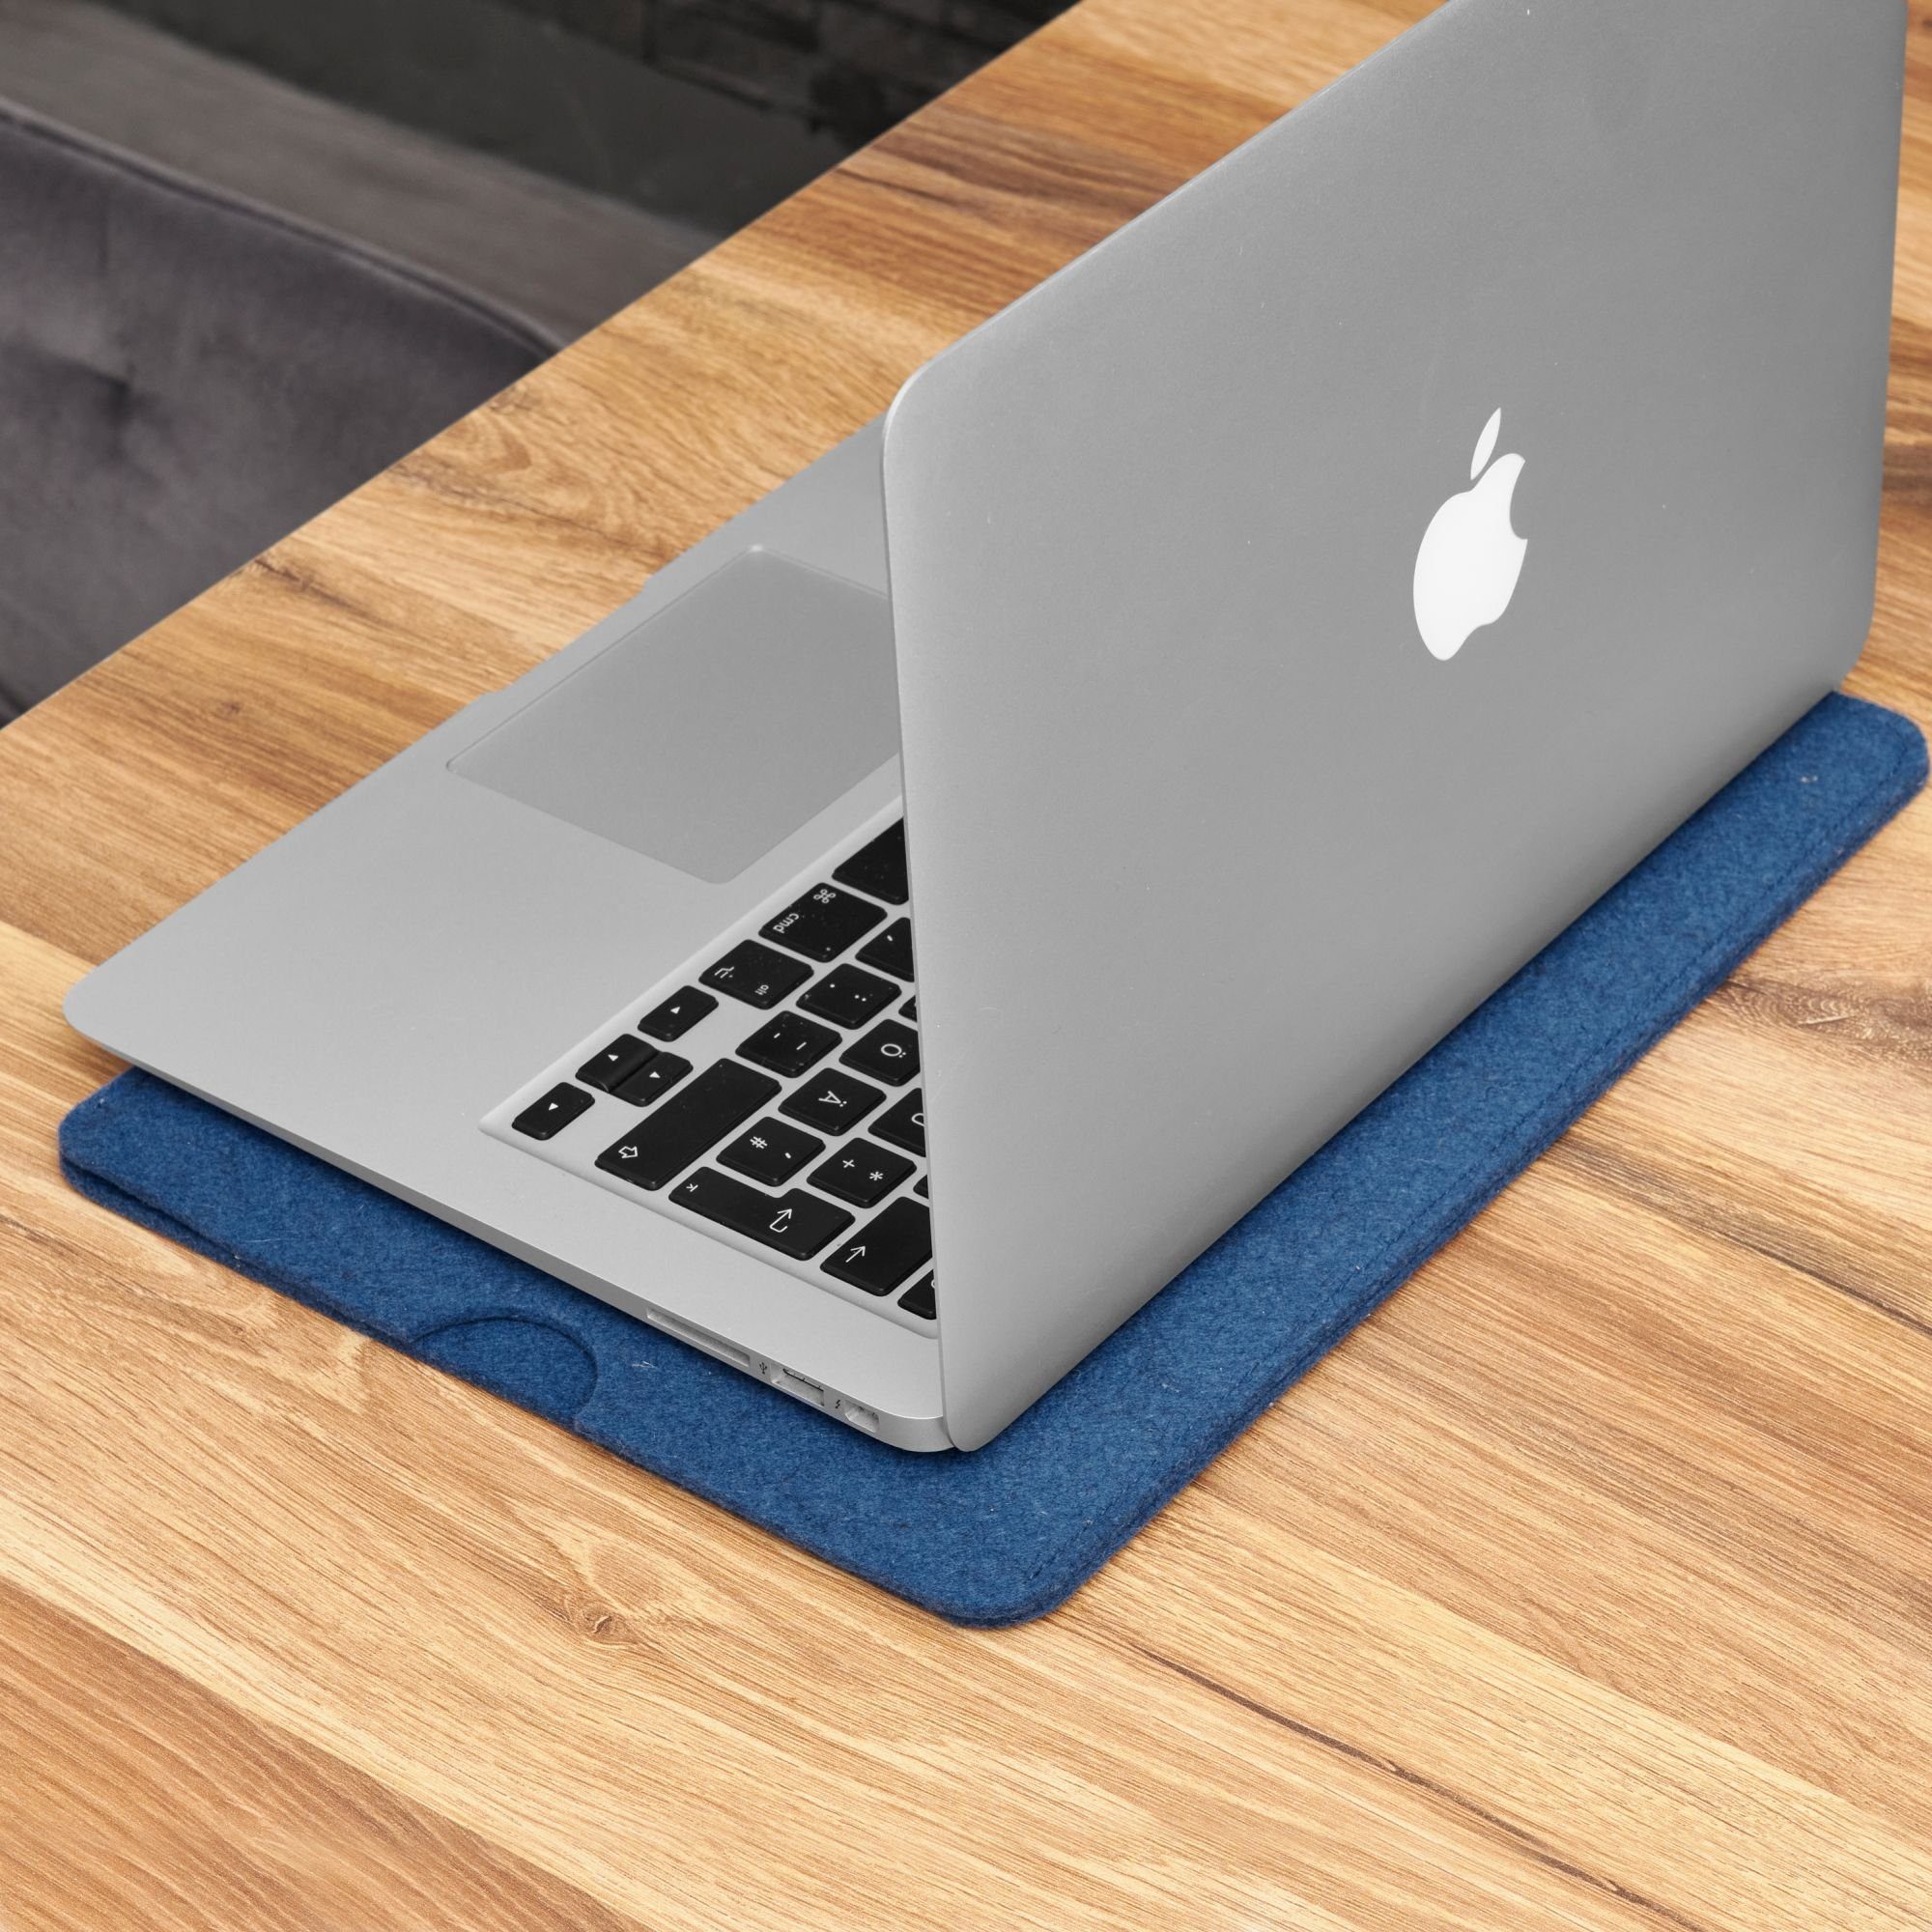 Handmade Blau 100% Laptoptasche Hülle (M1/M2) 16" für Schurwolle, in Case, Pro Made Germany Filz Tasche CoverKingz Apple MacBook